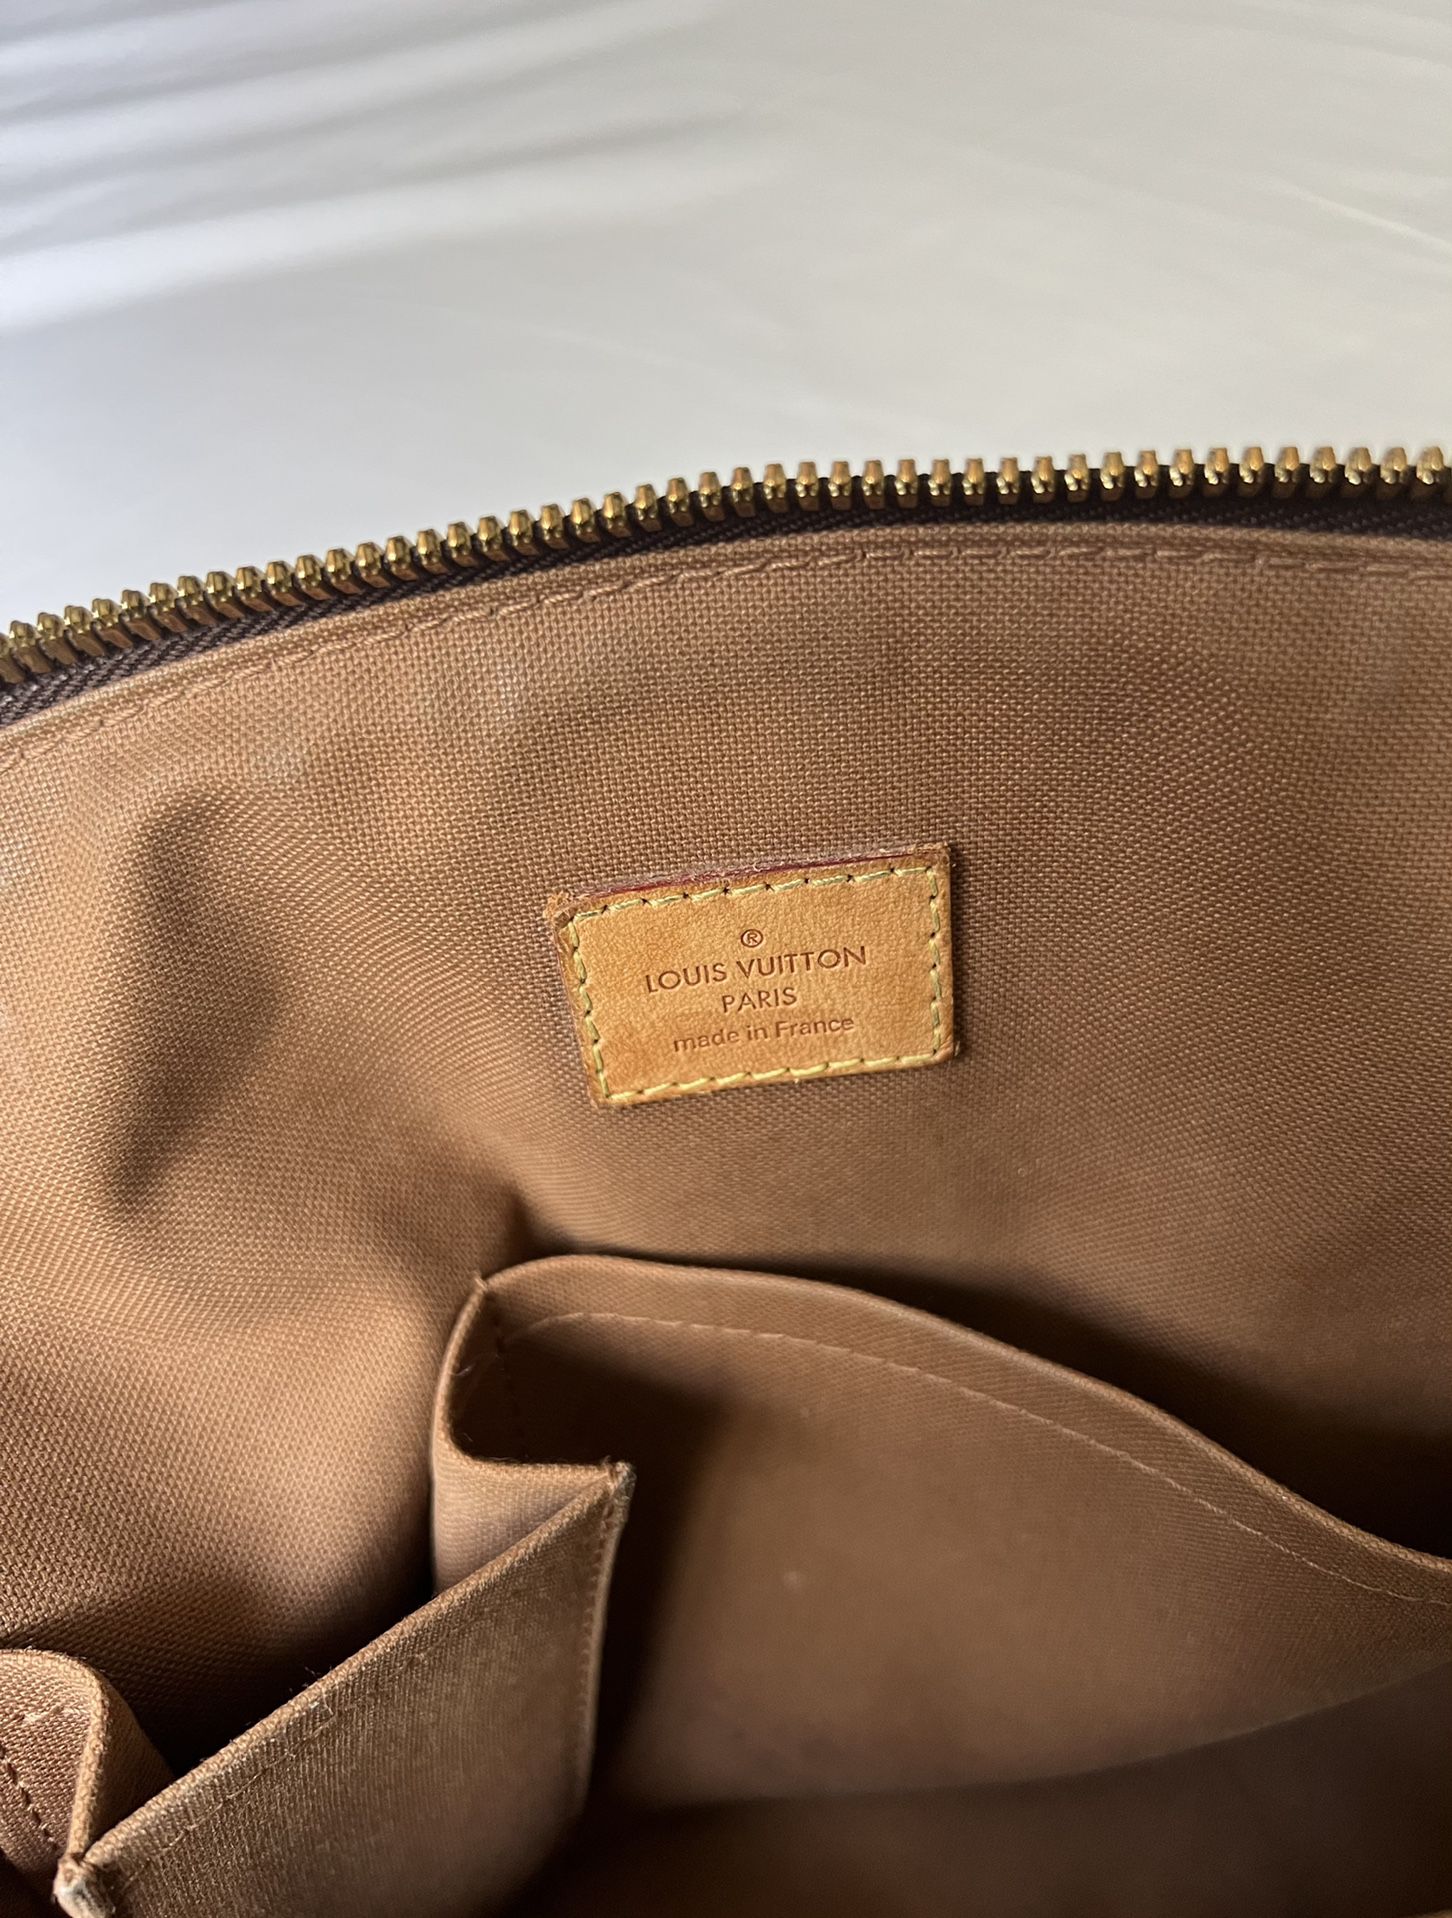 Authentic Louis Vuitton Tivoli PM Monogram Satchel Bag